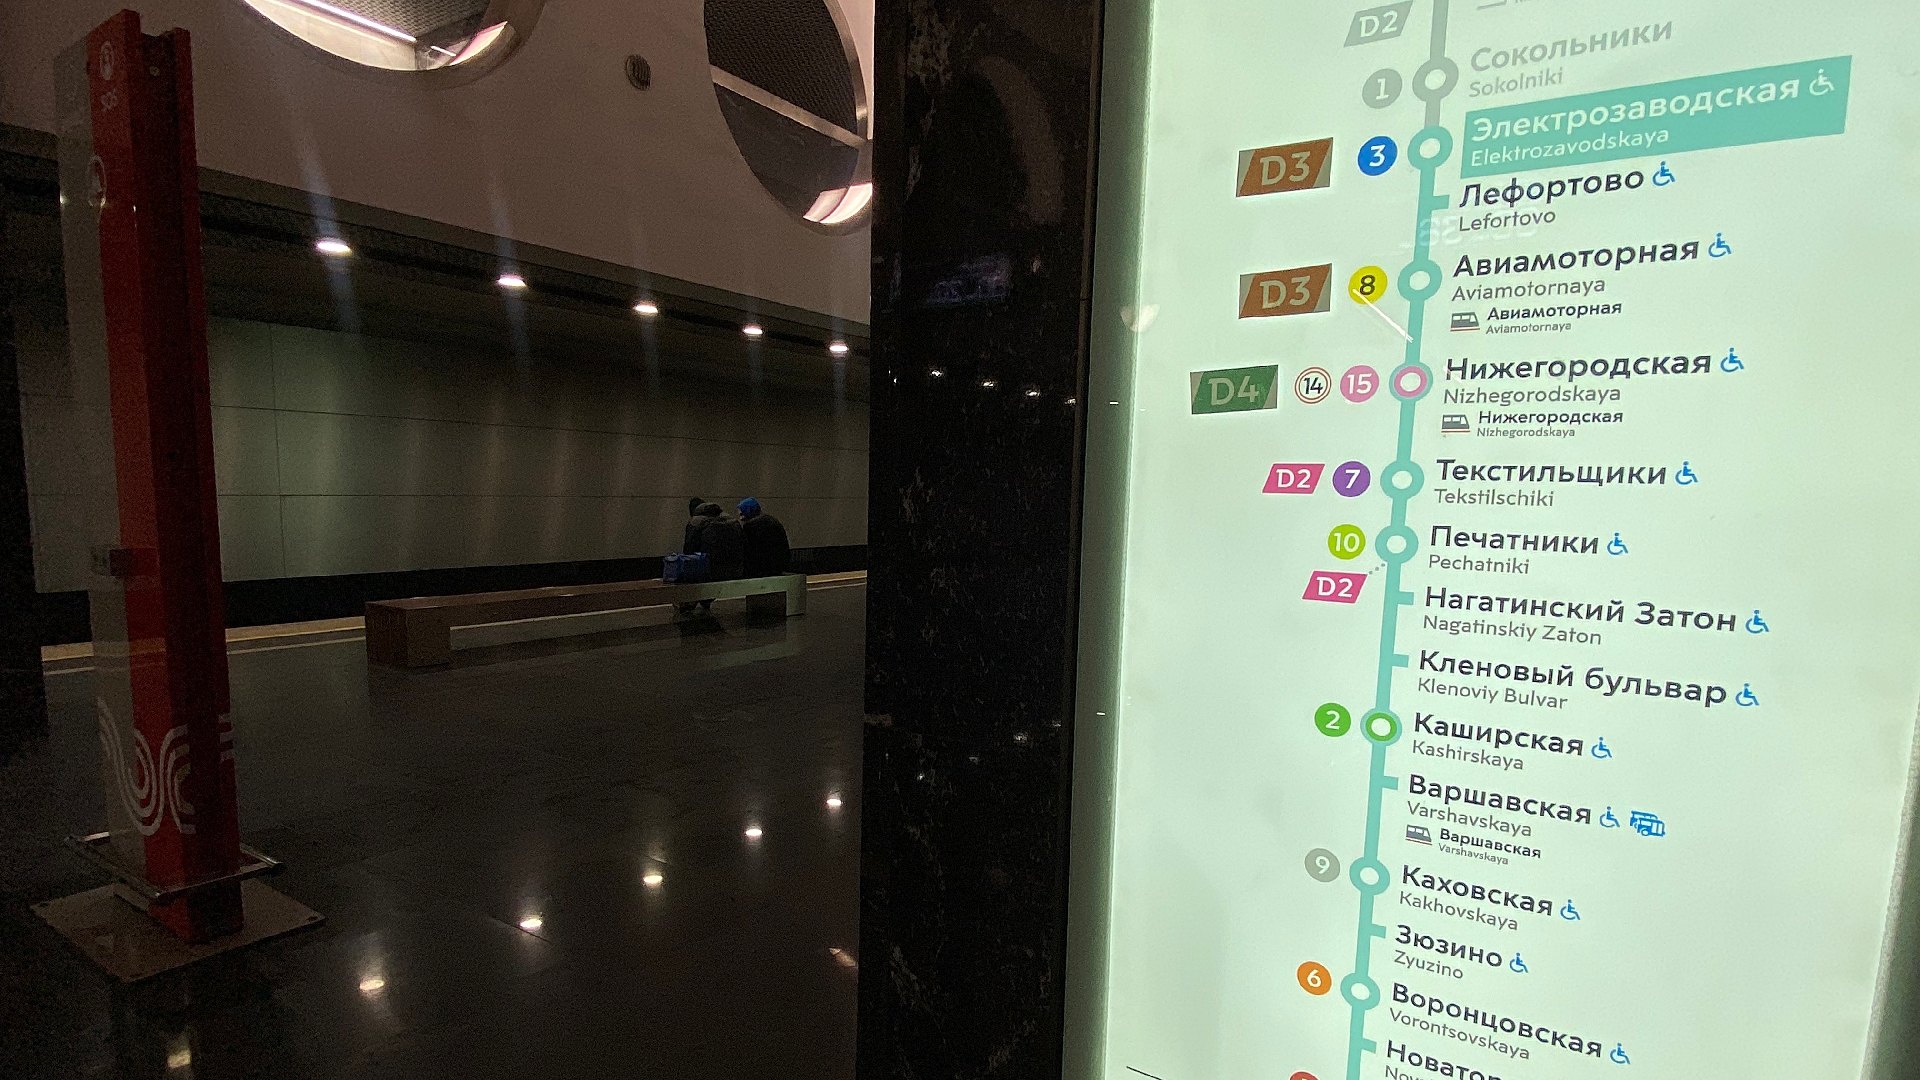 Специалисты обновили навигацию в московском метро, МЦК и МЦД